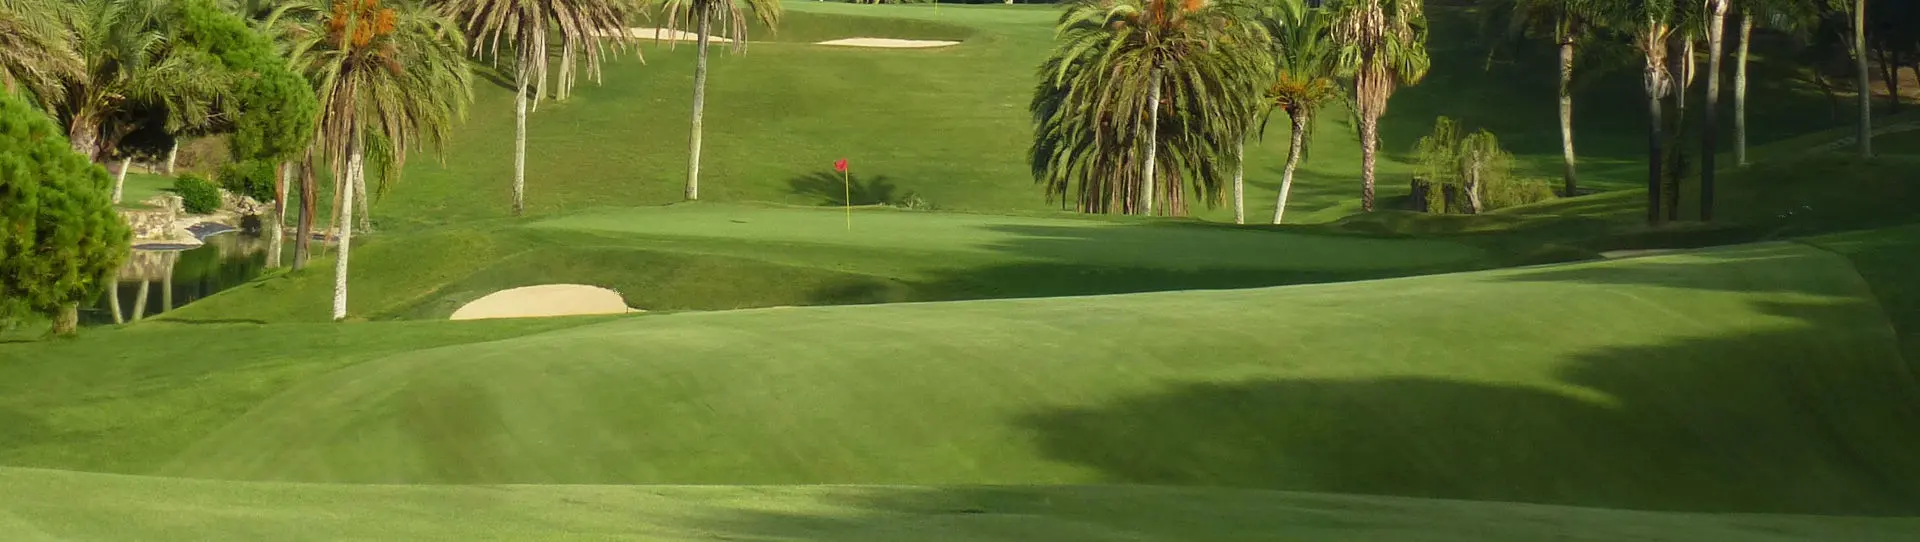 Spain golf courses - Torrequebrada Golf - Photo 2